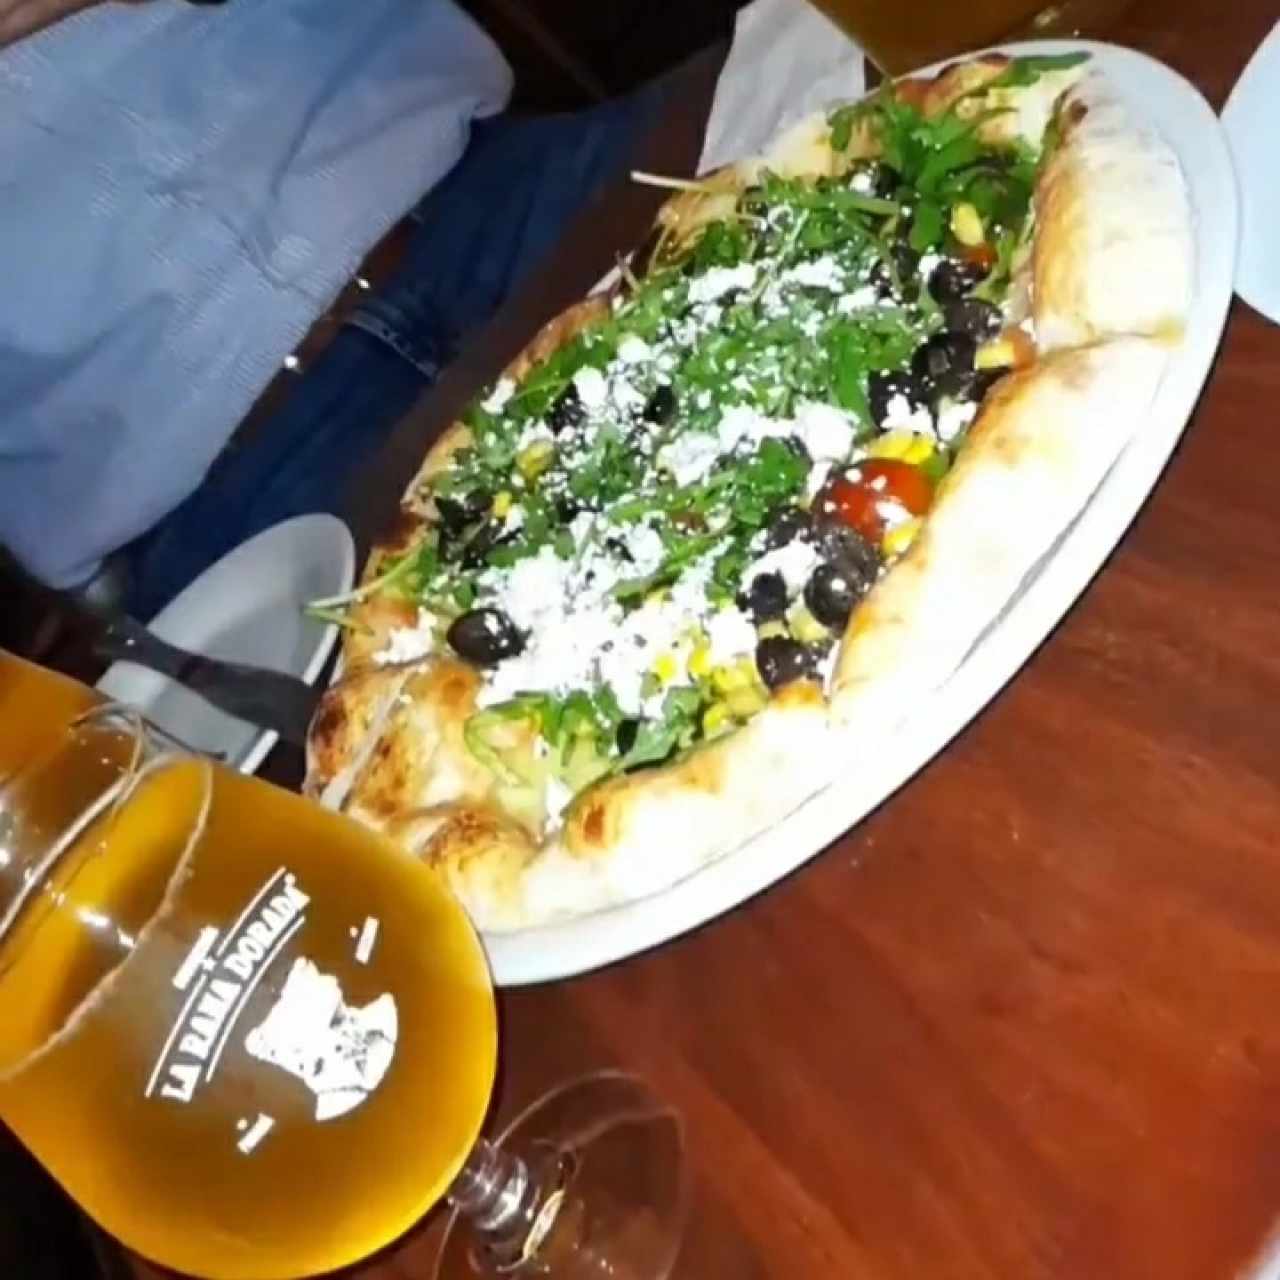 cerveza de maracuyá con sal y pizza vegetariana 